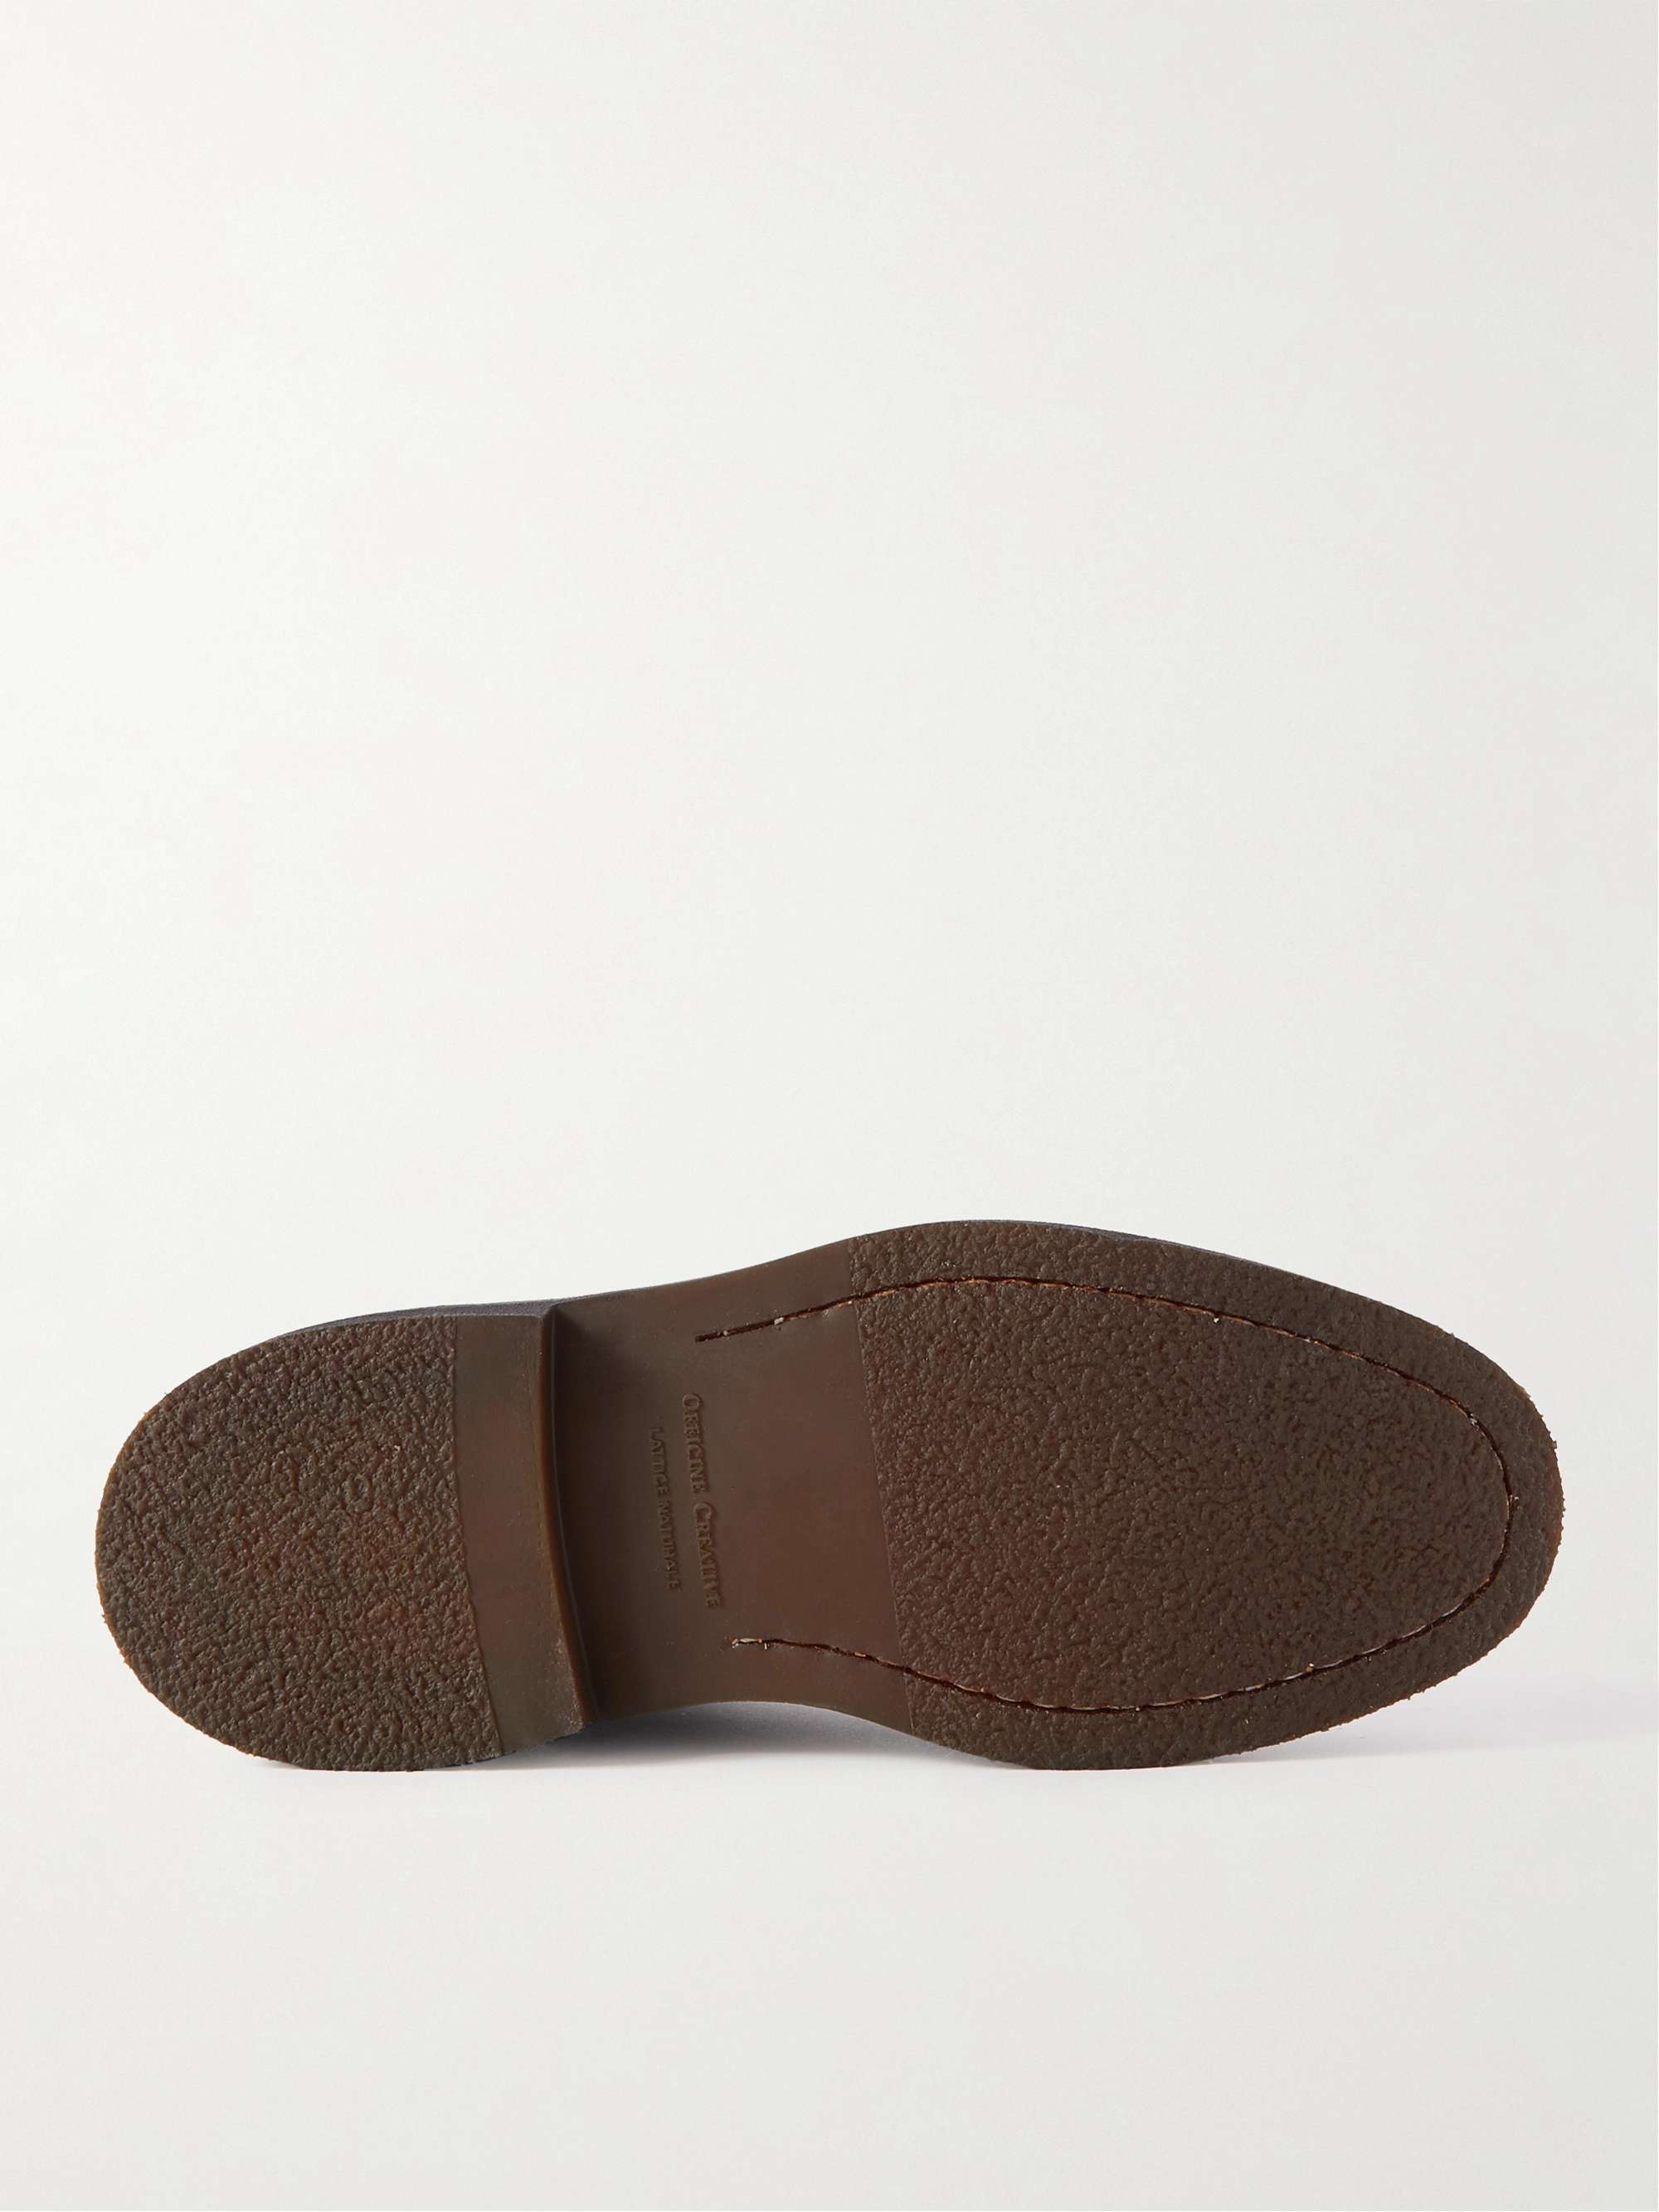 OFFICINE CREATIVE Hopkins Full-Grain Leather Chelsea Boots for Men | MR ...